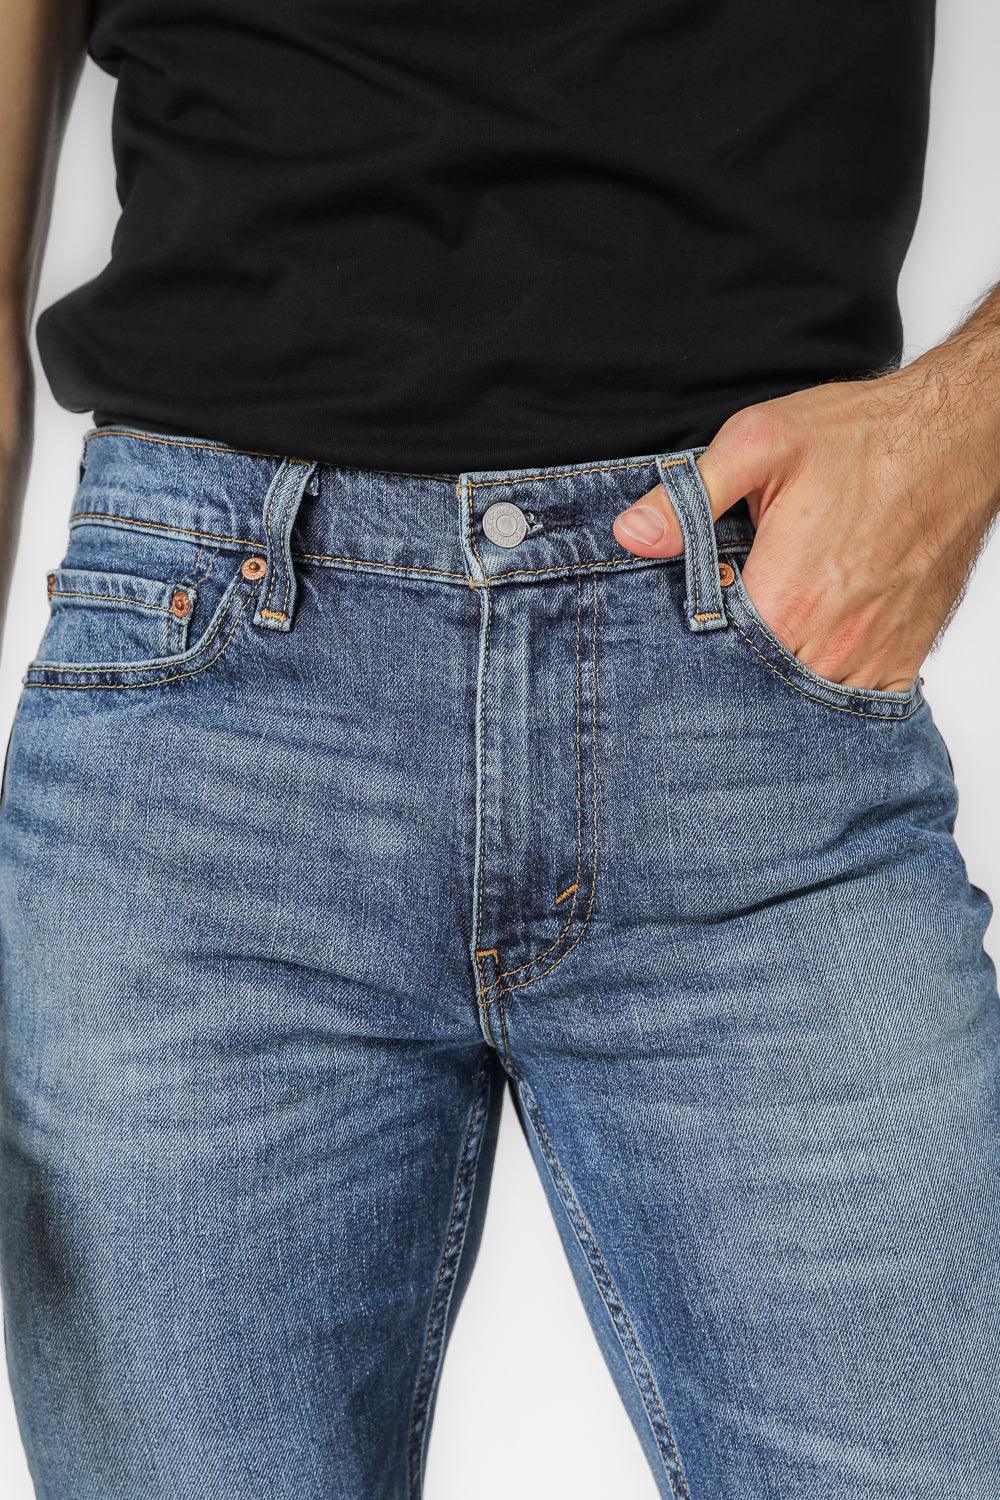 LEVI'S - ג'ינס משופשף MED INDIGO 511 SLIM - MASHBIR//365